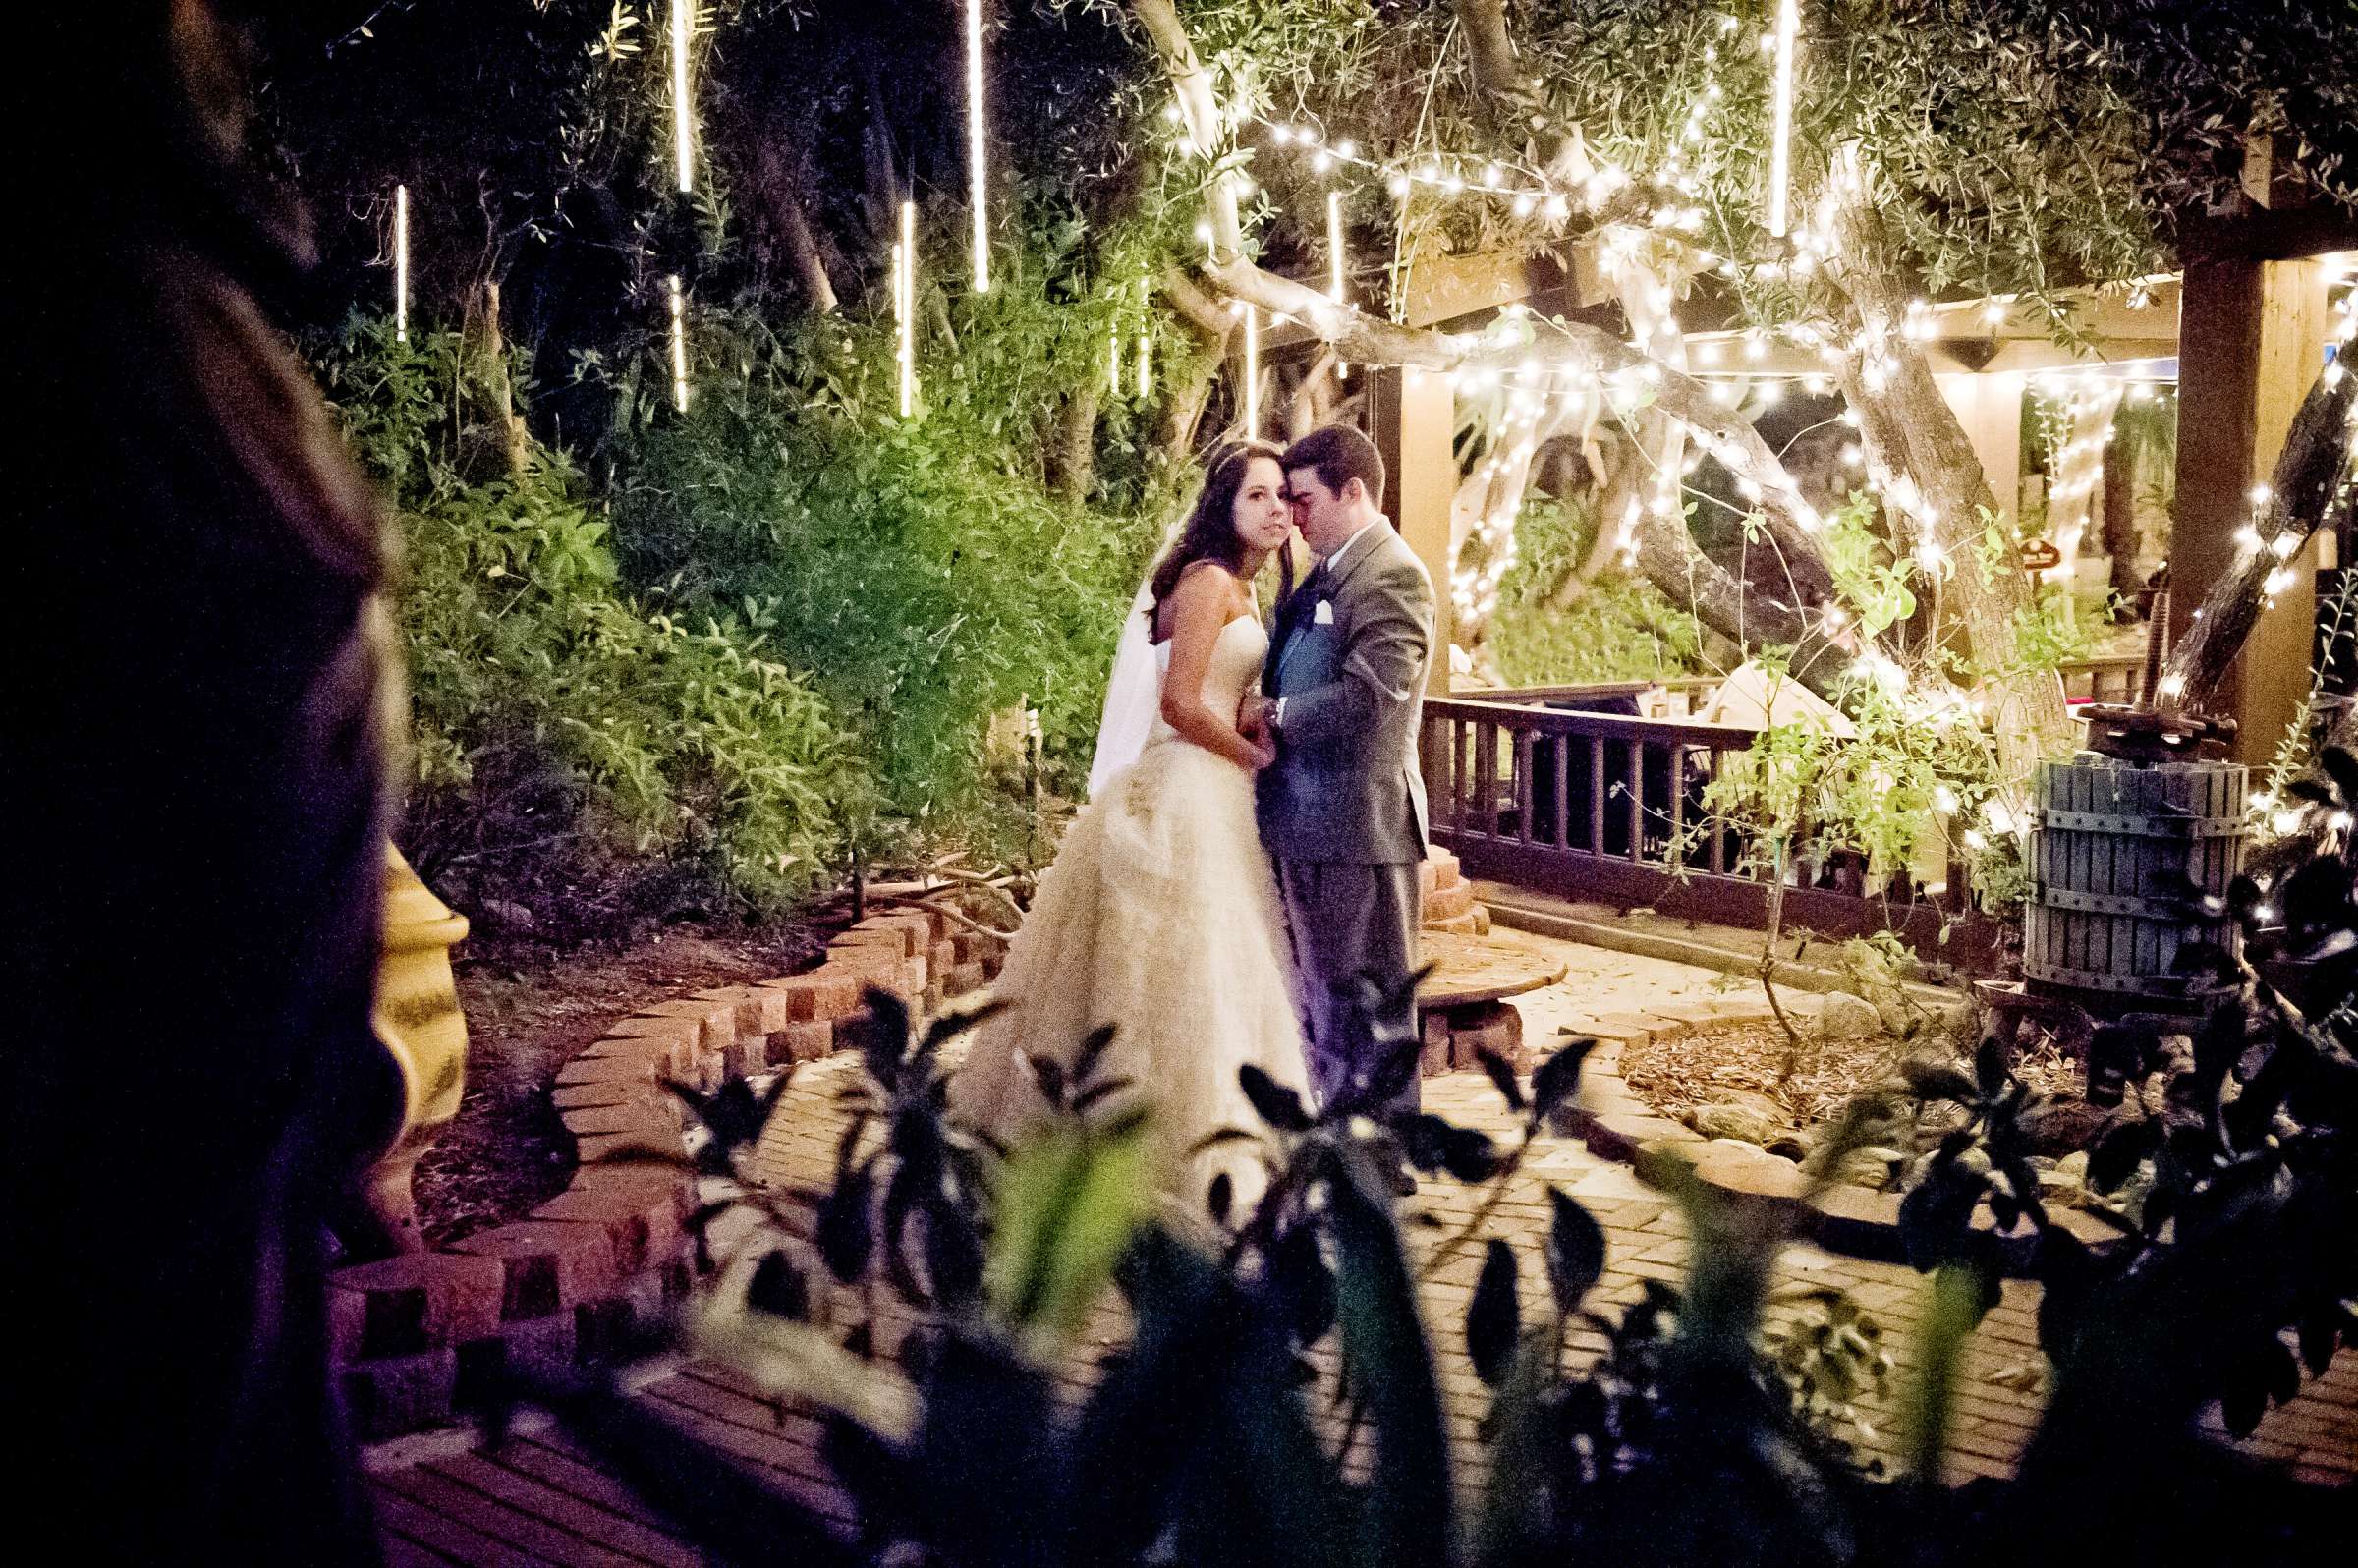 Mount Palomar Winery Wedding, Brandi and Jason Wedding Photo #321701 by True Photography